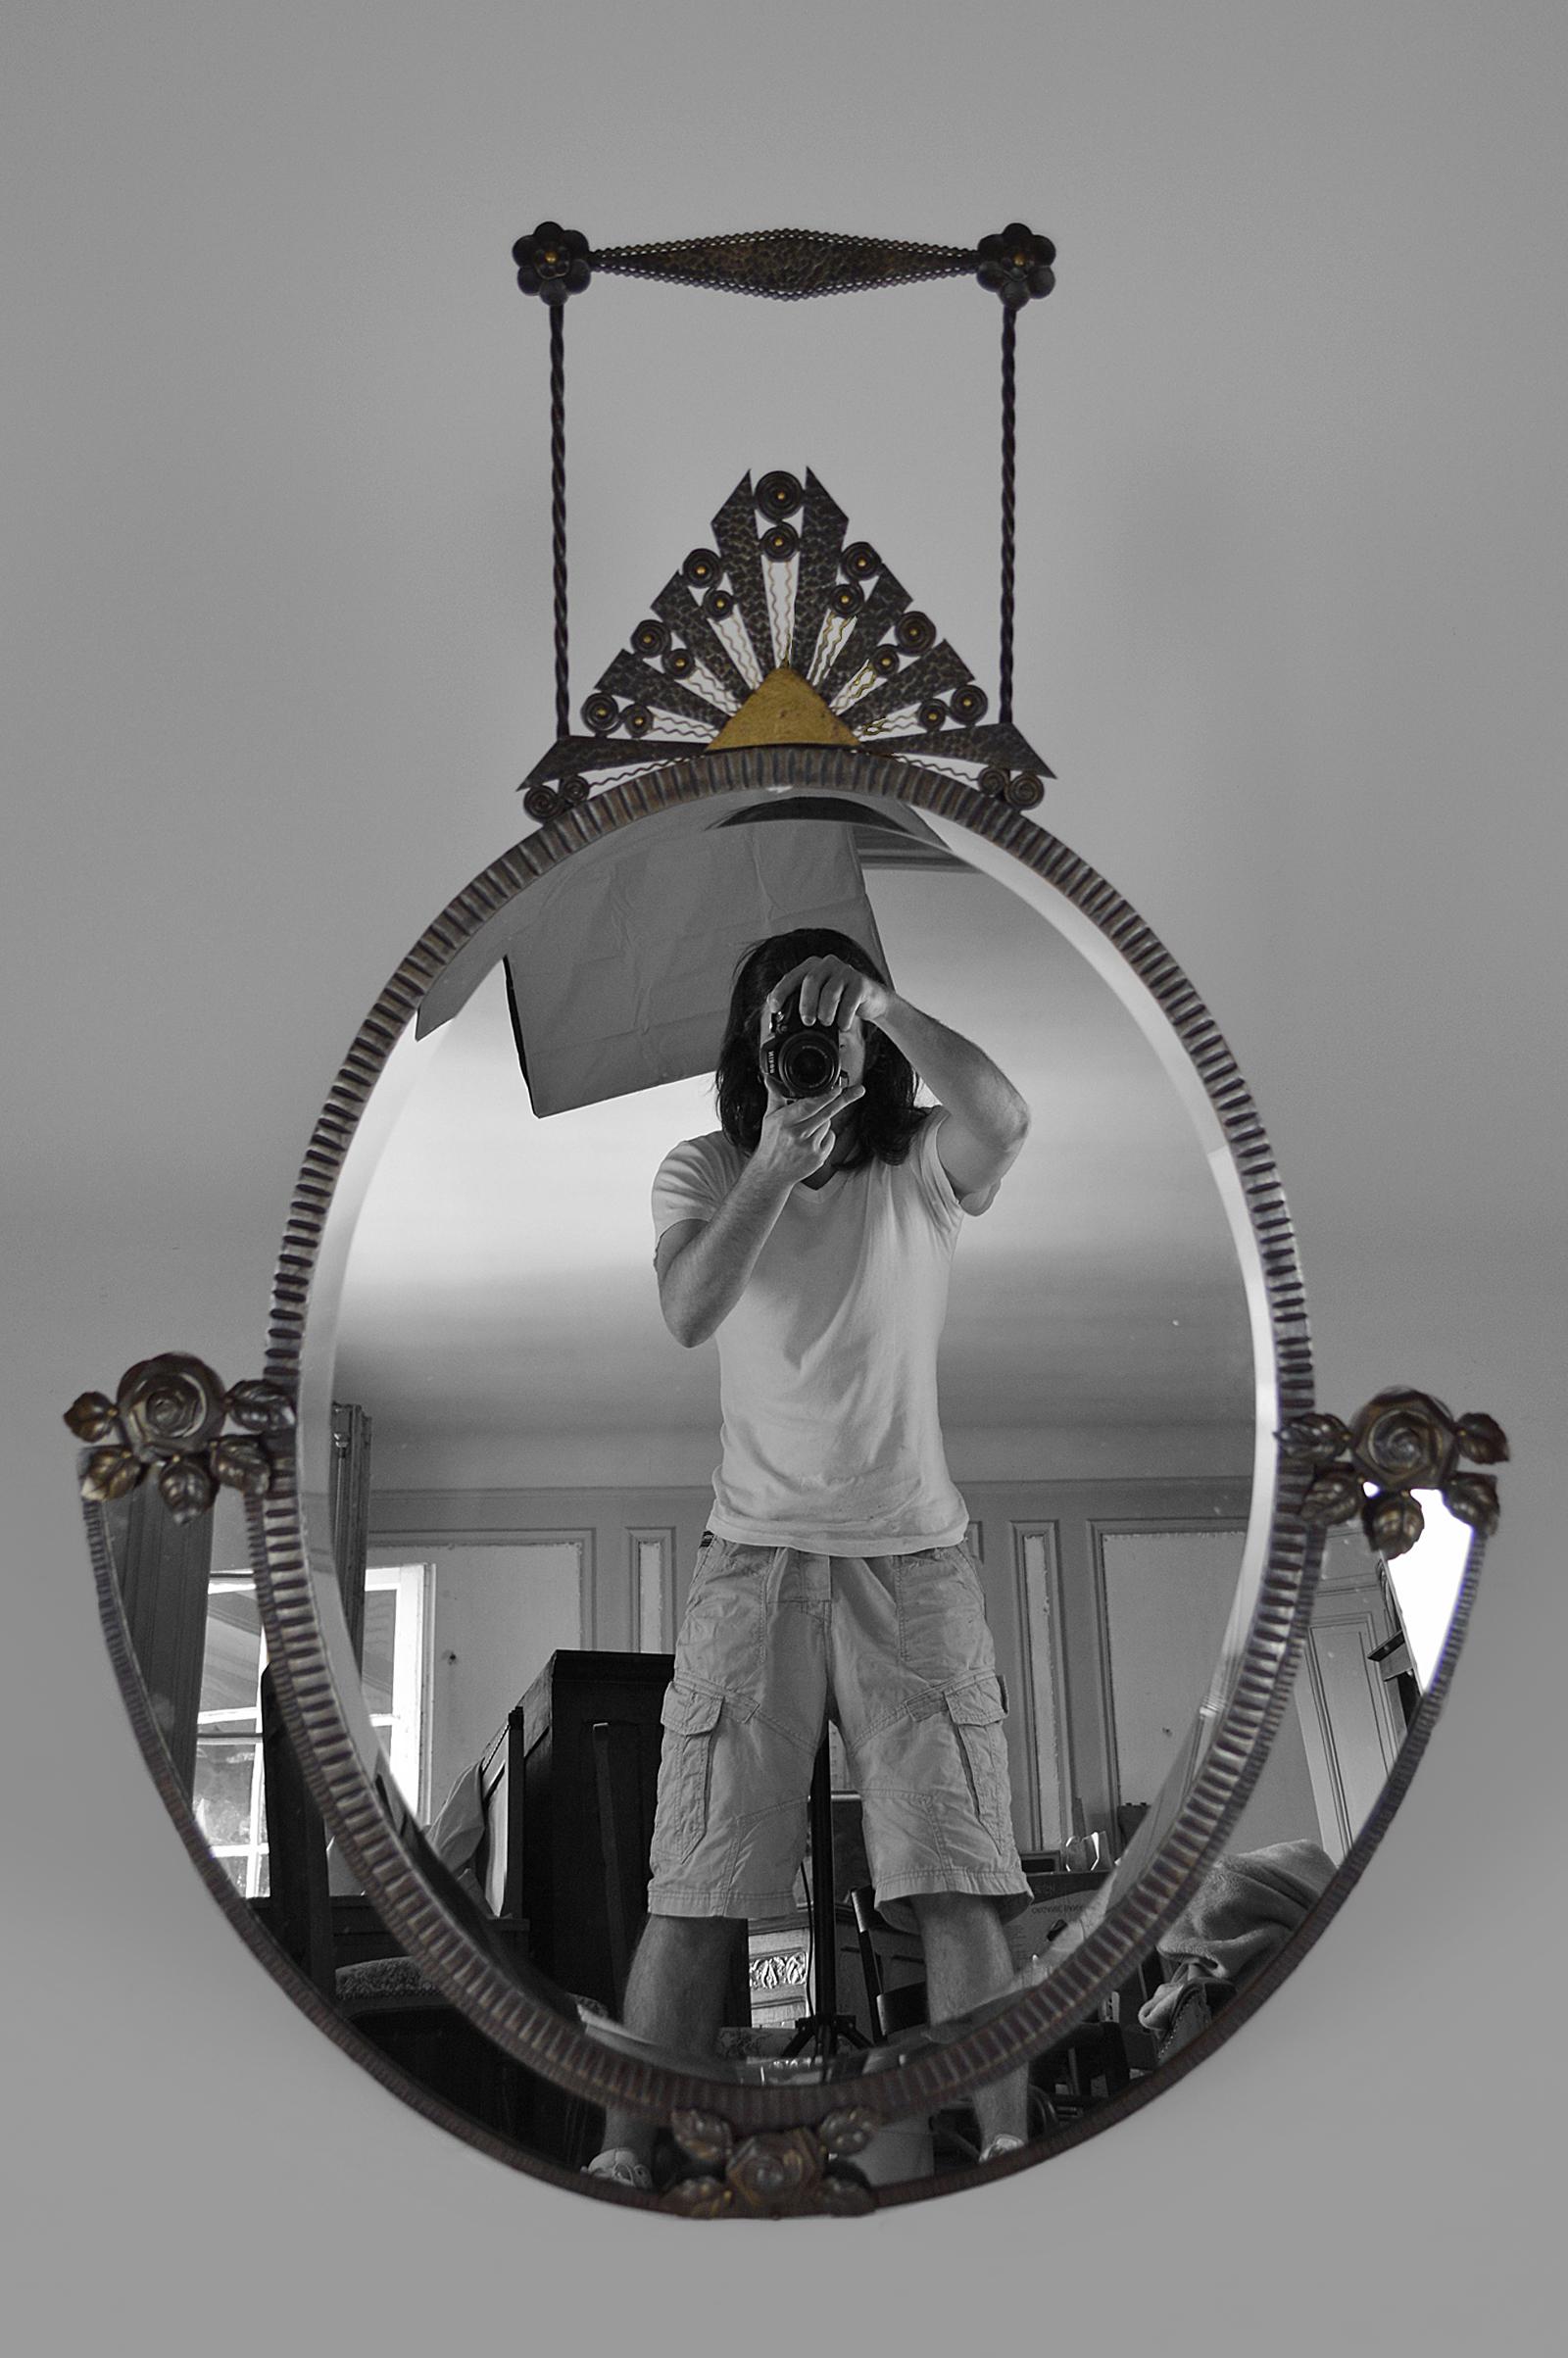 Wunderschöner Wandspiegel, bestehend aus einem großen abgeschrägten ovalen Spiegel, 2 kleinen halbmondförmigen Spiegeln und einem prächtigen schmiedeeisernen Rahmen zum Thema Nature (Muster aus Blumen, Blättern und Sonne). Die Sonne und ihre